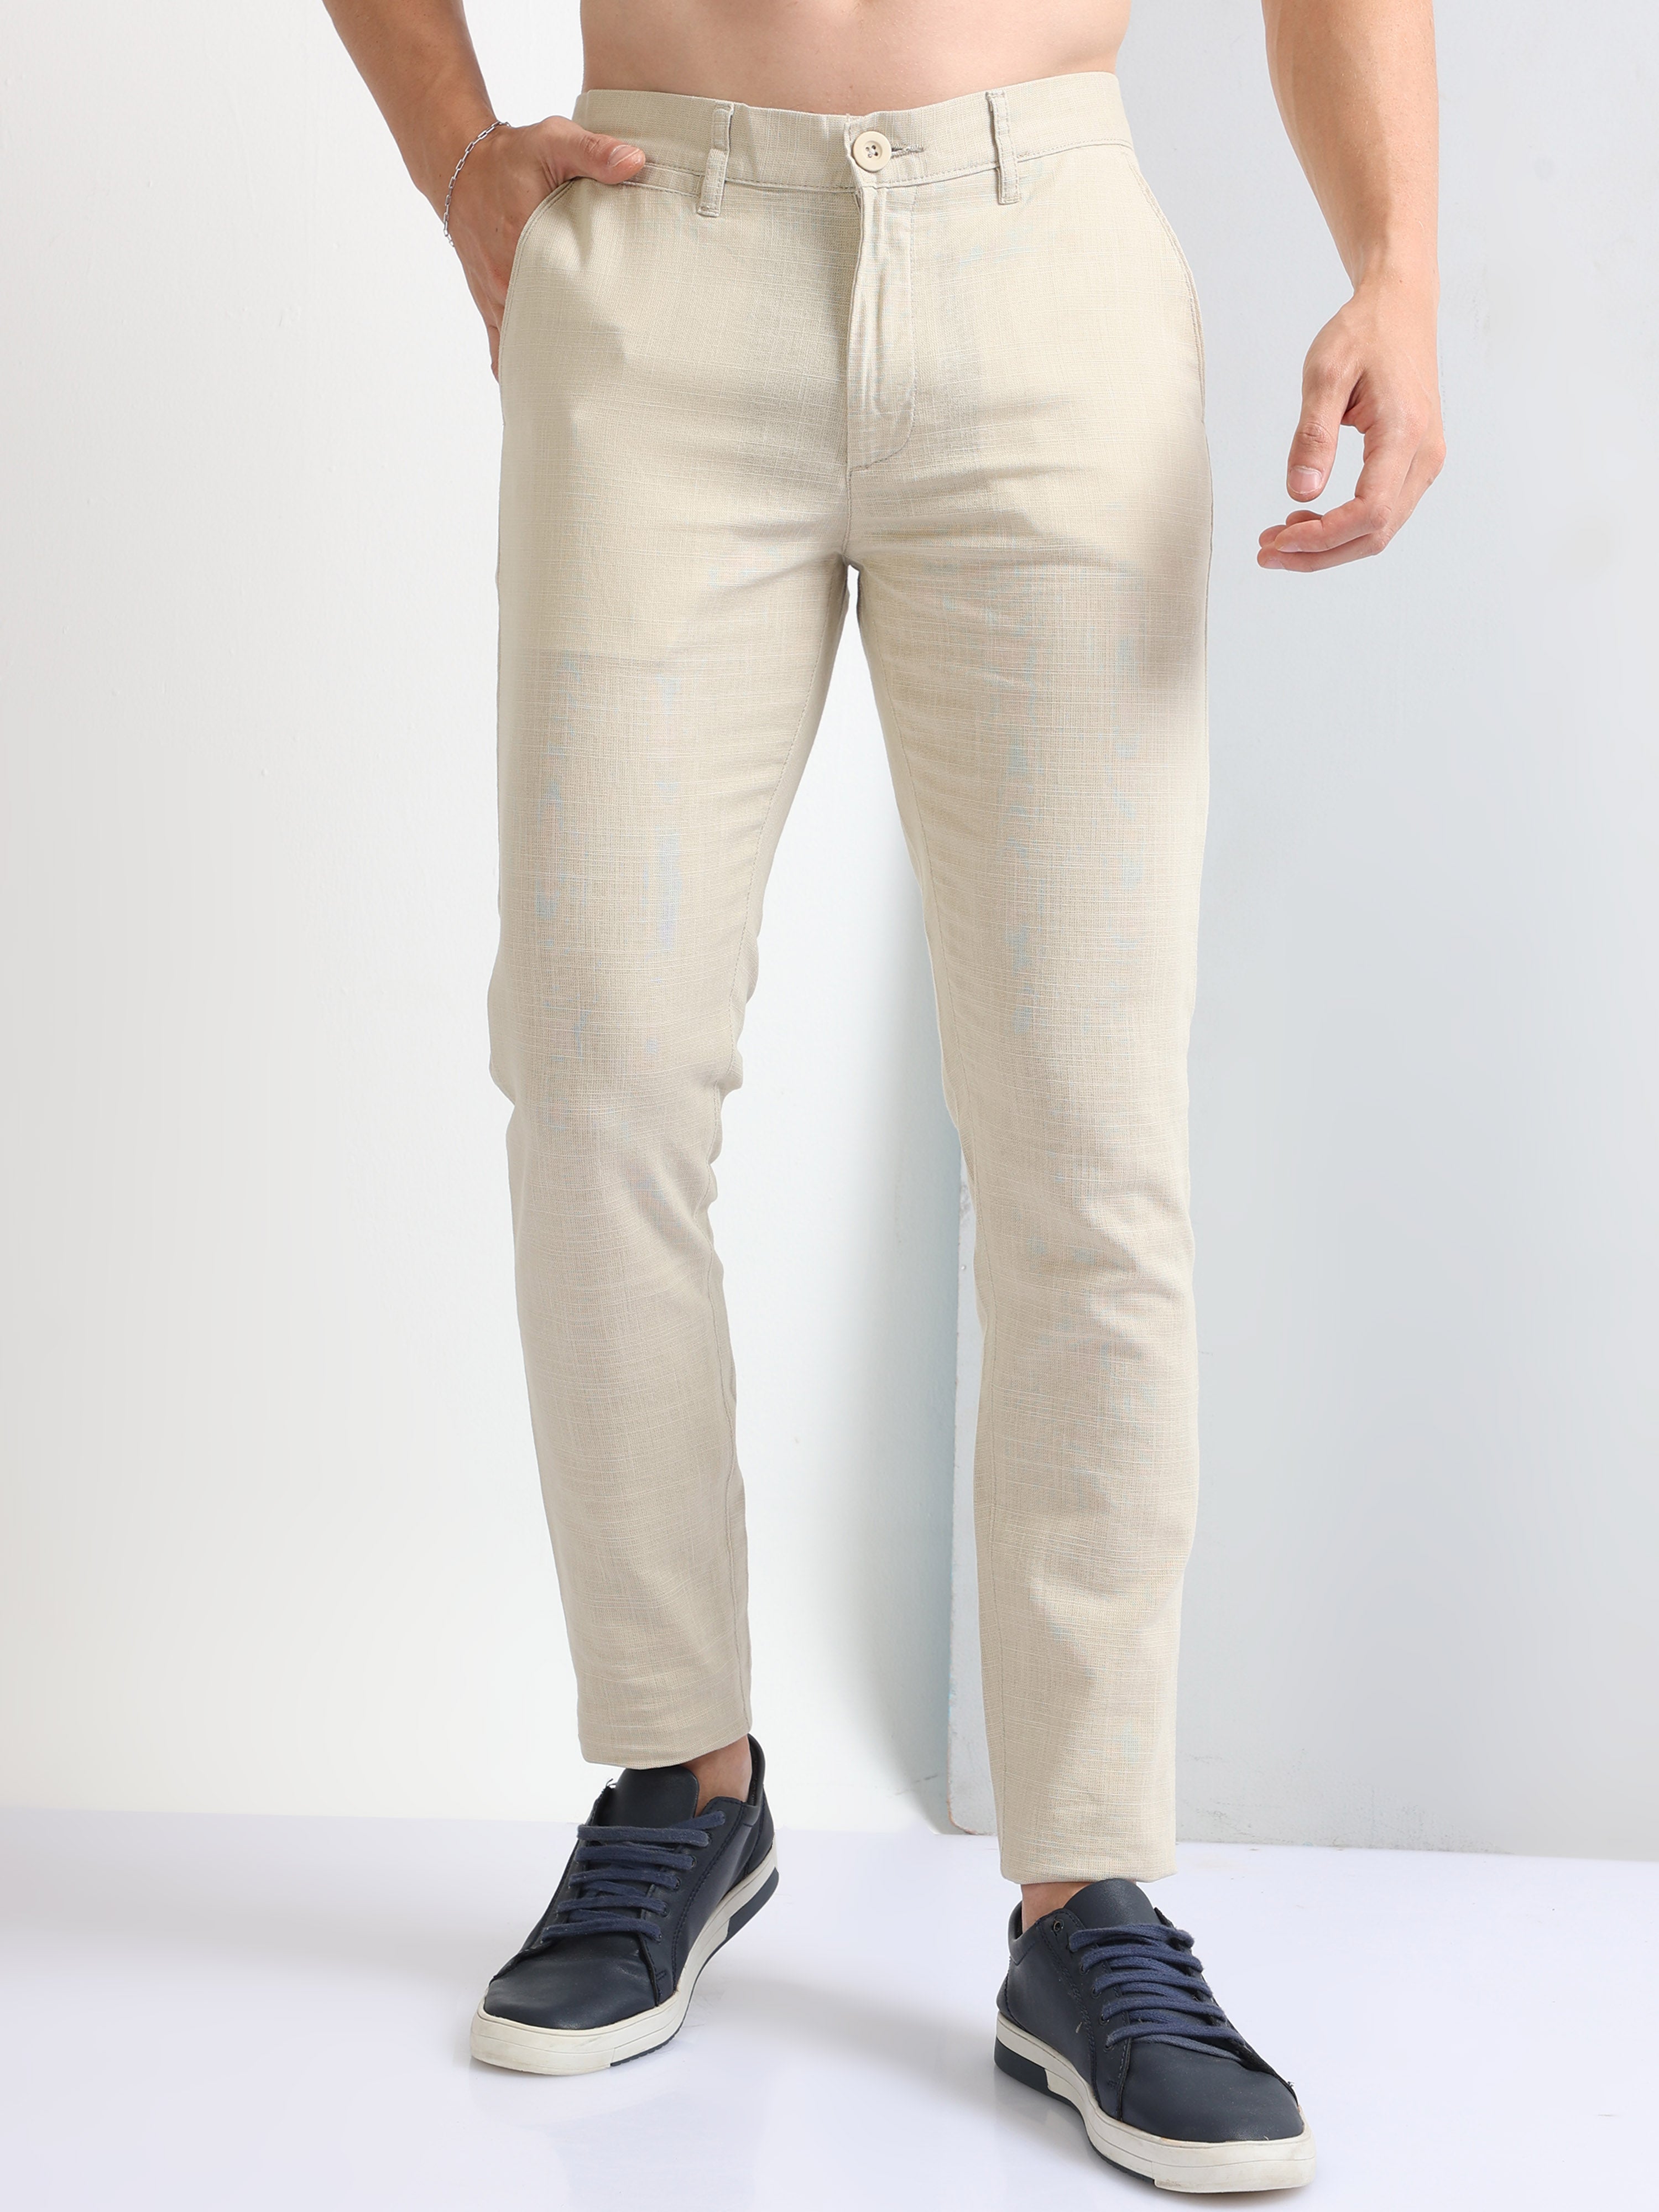 Buy online ASHTOM Cotton Khaki Formal Trouser Regular Fit For Men